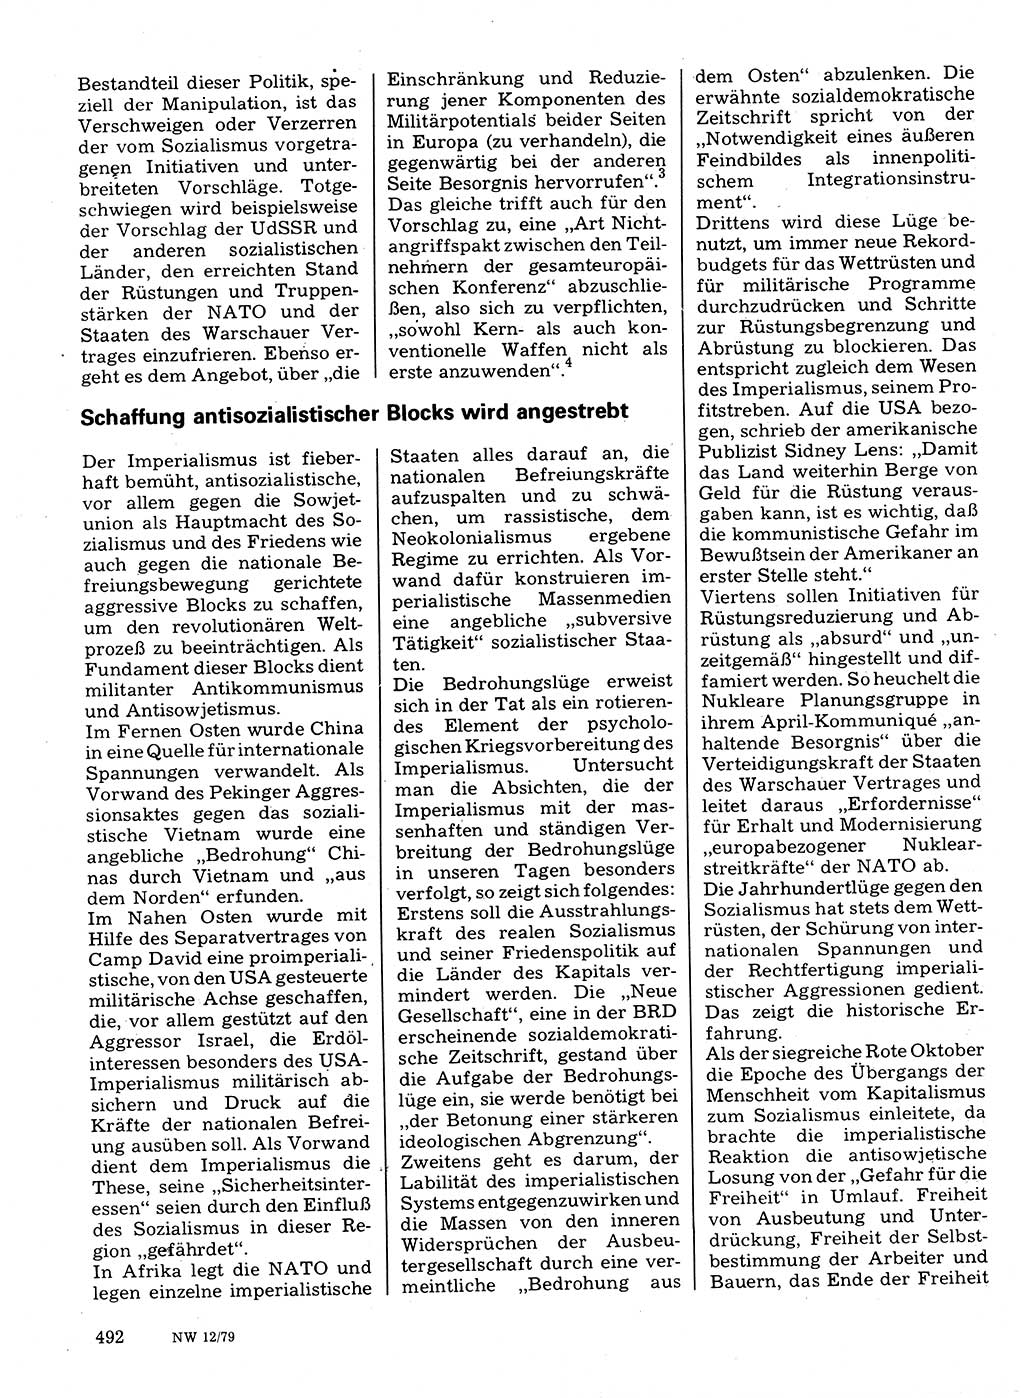 Neuer Weg (NW), Organ des Zentralkomitees (ZK) der SED (Sozialistische Einheitspartei Deutschlands) für Fragen des Parteilebens, 34. Jahrgang [Deutsche Demokratische Republik (DDR)] 1979, Seite 492 (NW ZK SED DDR 1979, S. 492)